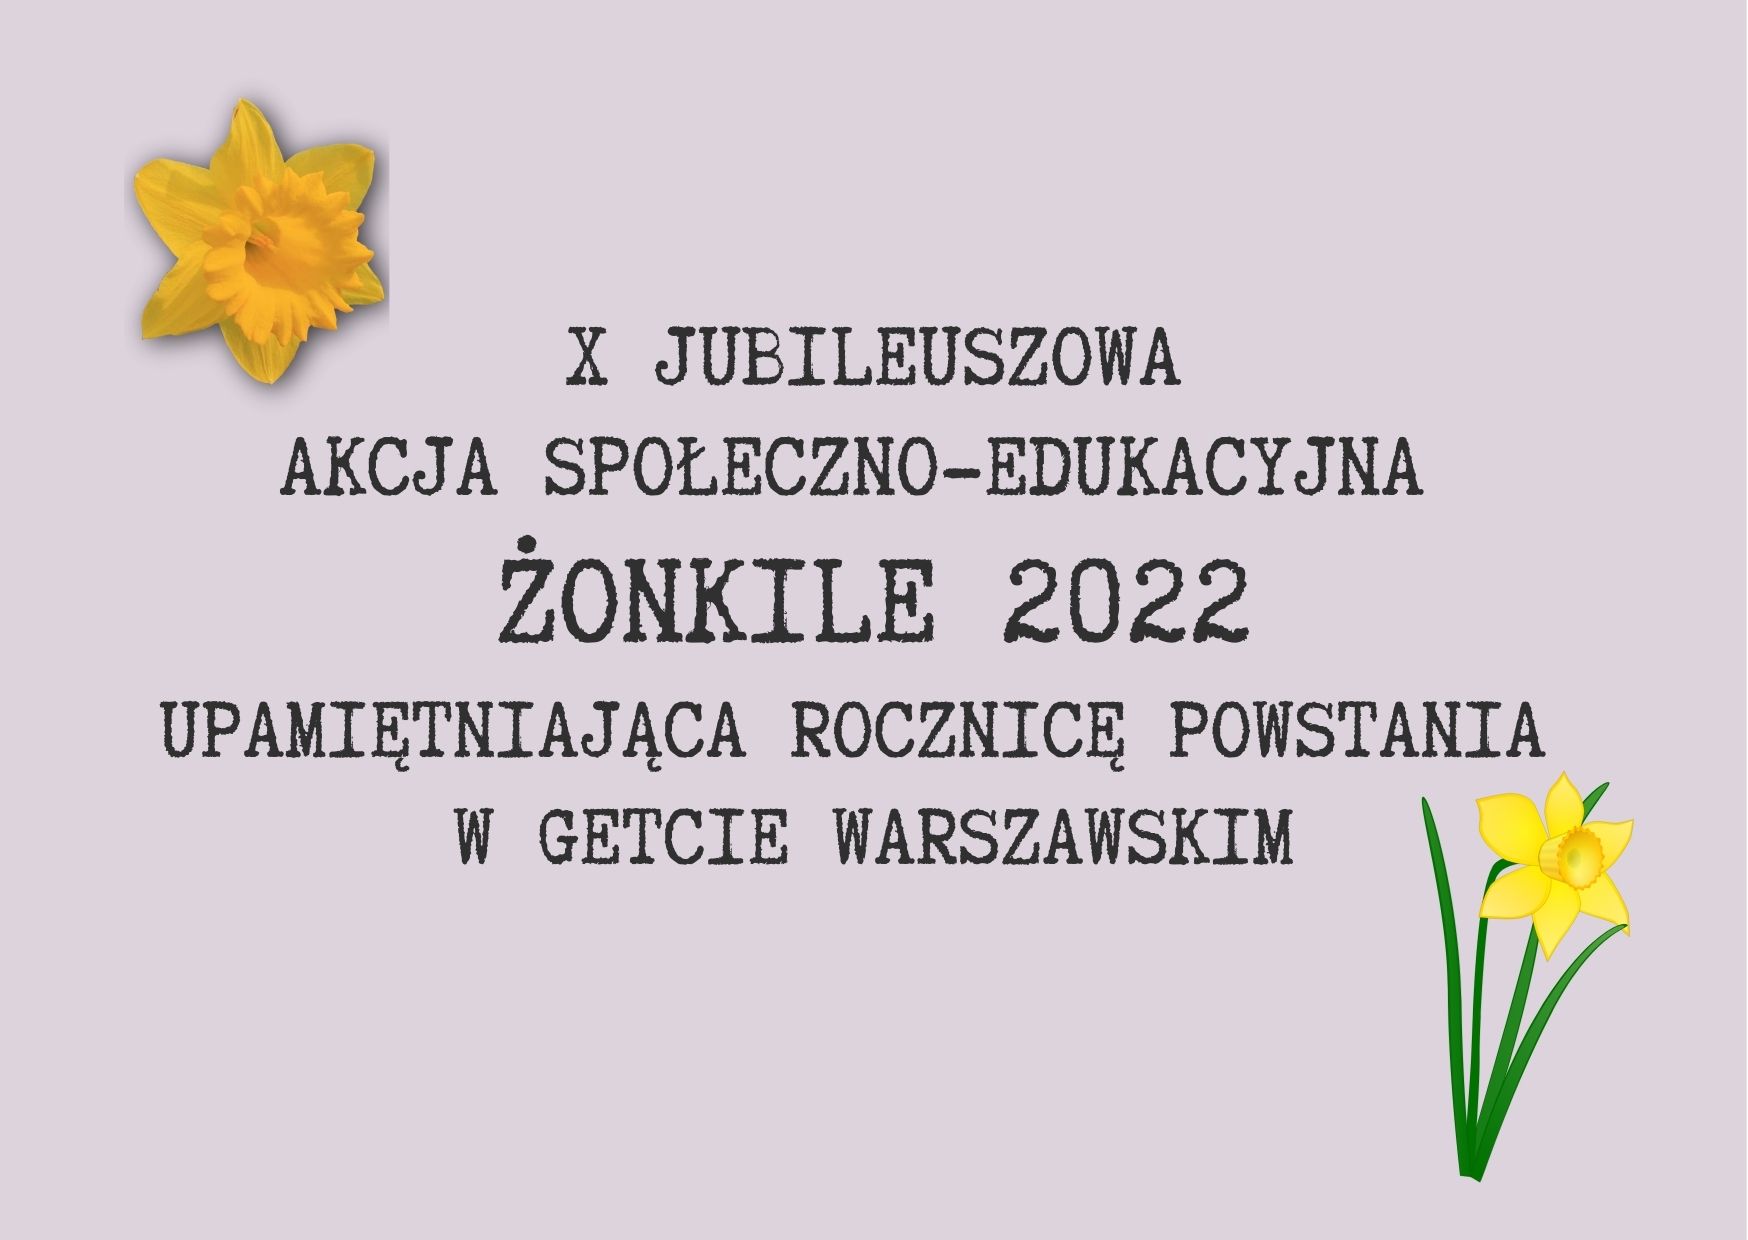 Grafika przedstawia żonkile oraz napis" X Jubileuszowa Akcja Społeczno-Edukacyjna Żonkile 2022 upamiętniająca rocznicę powstania w getcie warszawskim